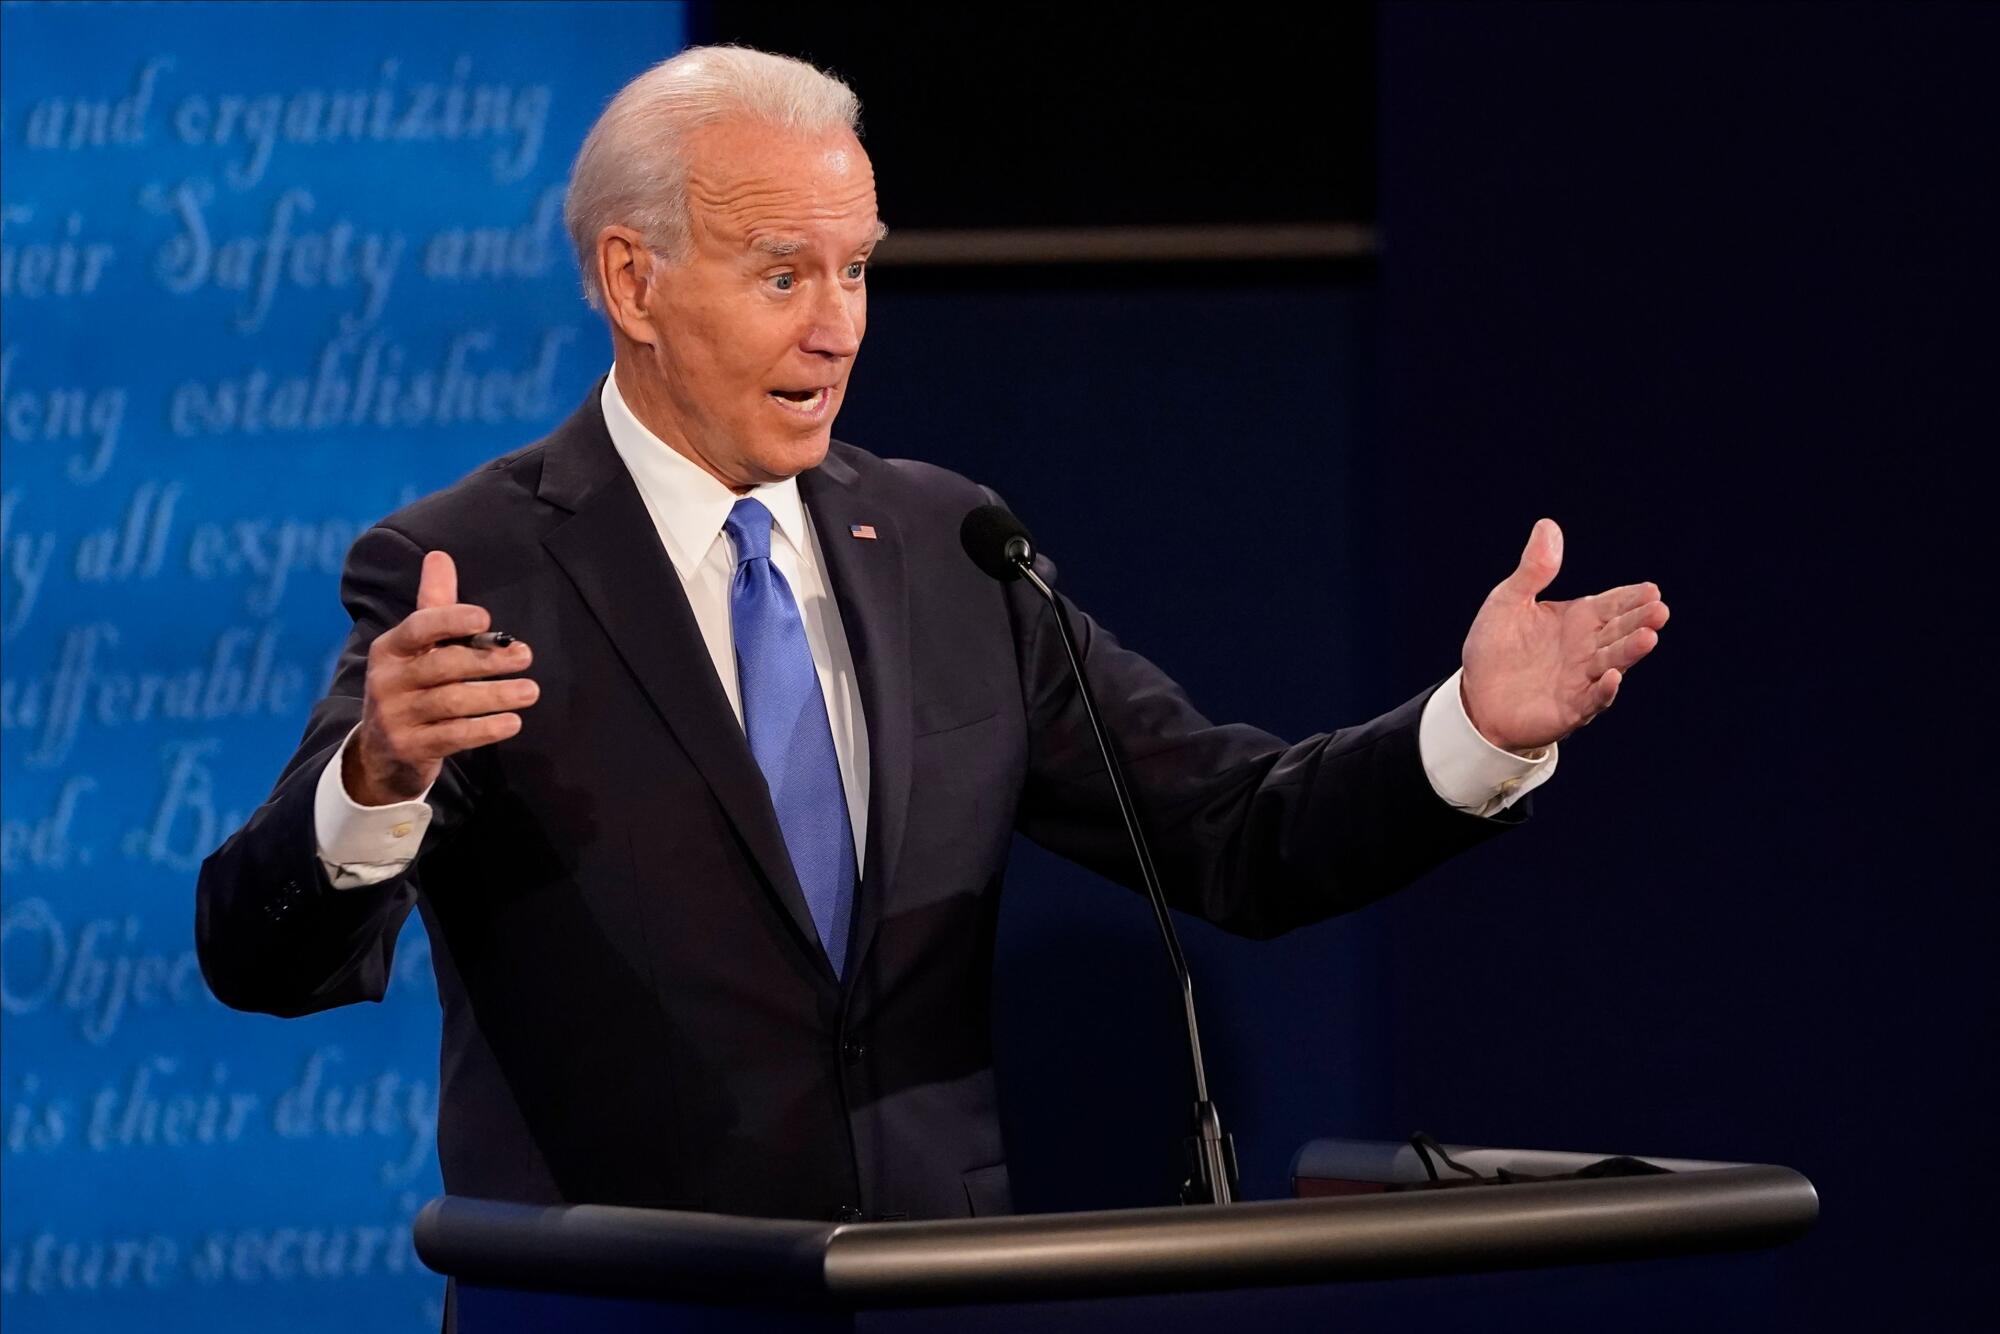 Joe Biden gestures with both hands as he speaks onstage